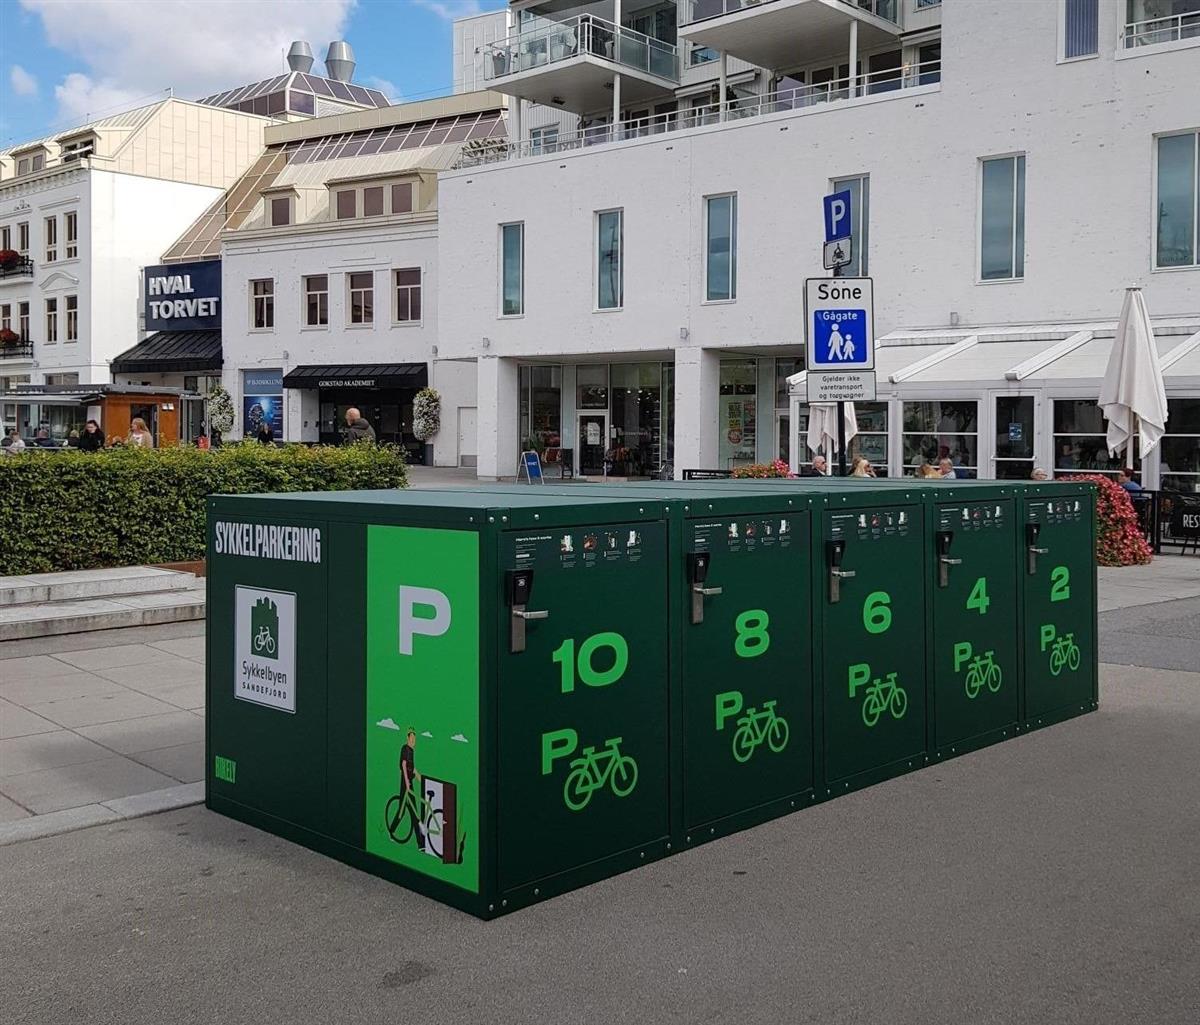 Sykkelparkering i Sandefjord sentrum. - Klikk for stort bilde